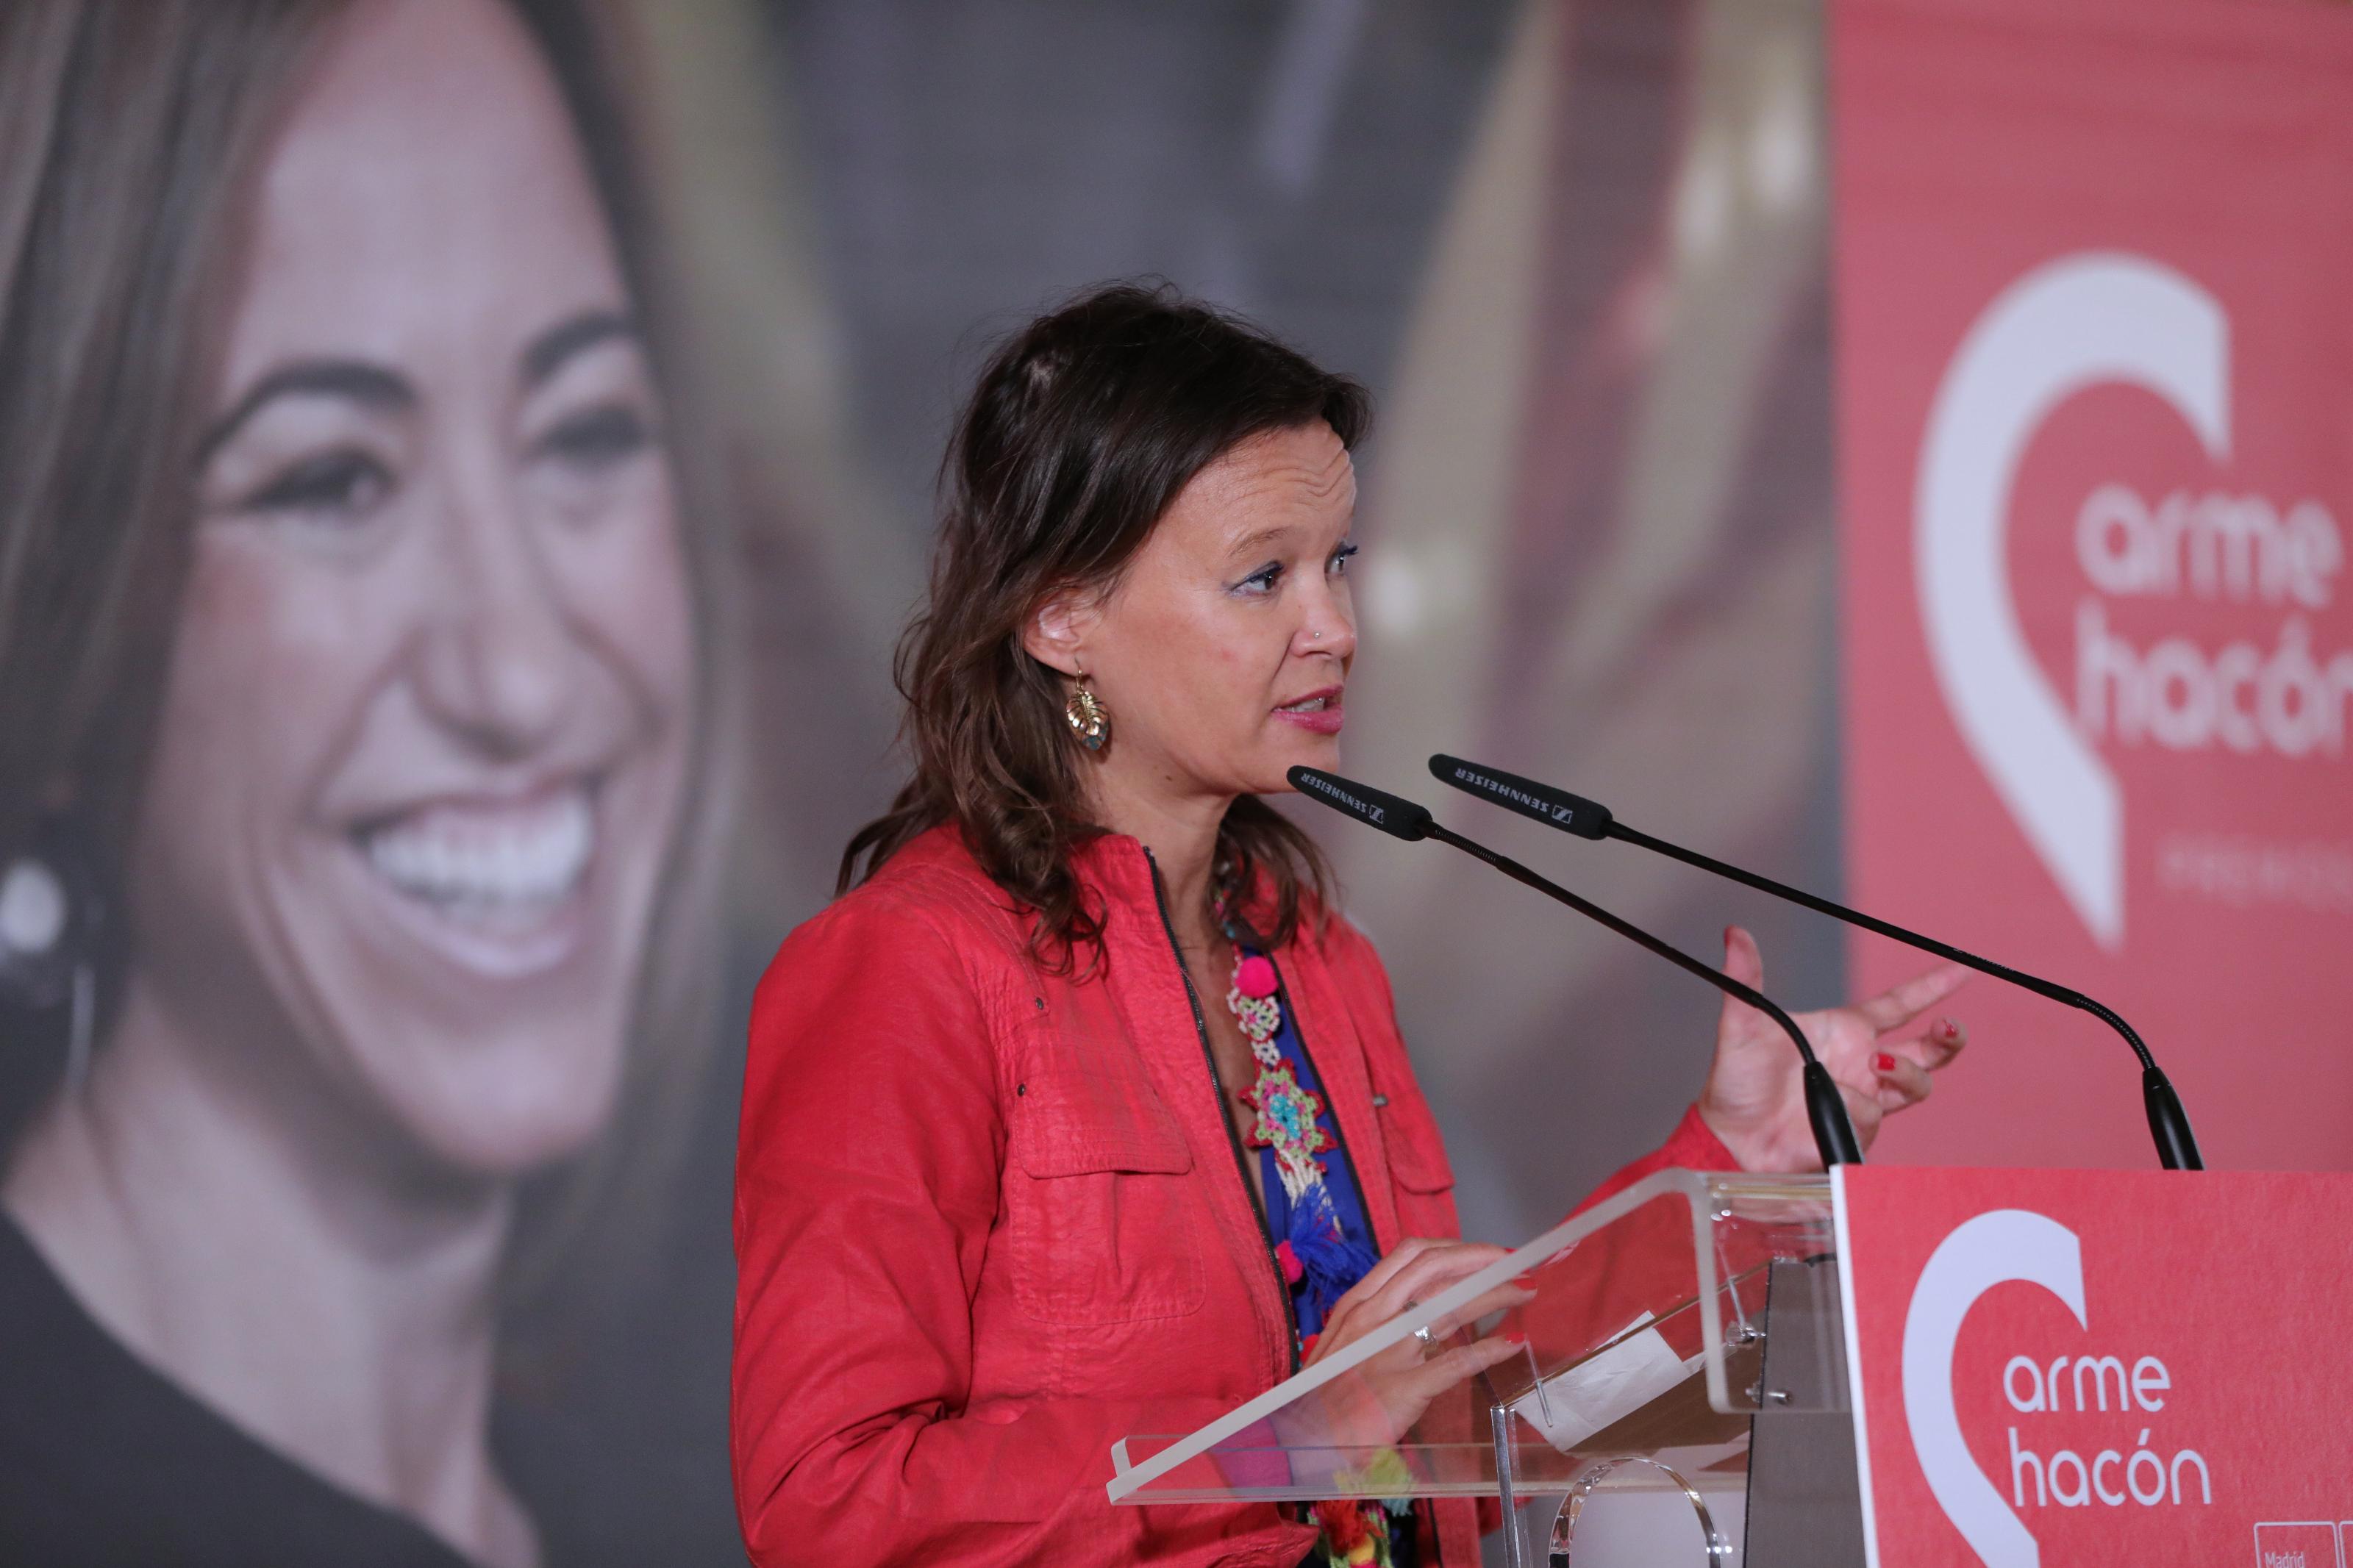 La exministra Leire Pajín en la entrega de premios Carme Chacón en Madrid a 4 de octubre de 2019. Europa Press.